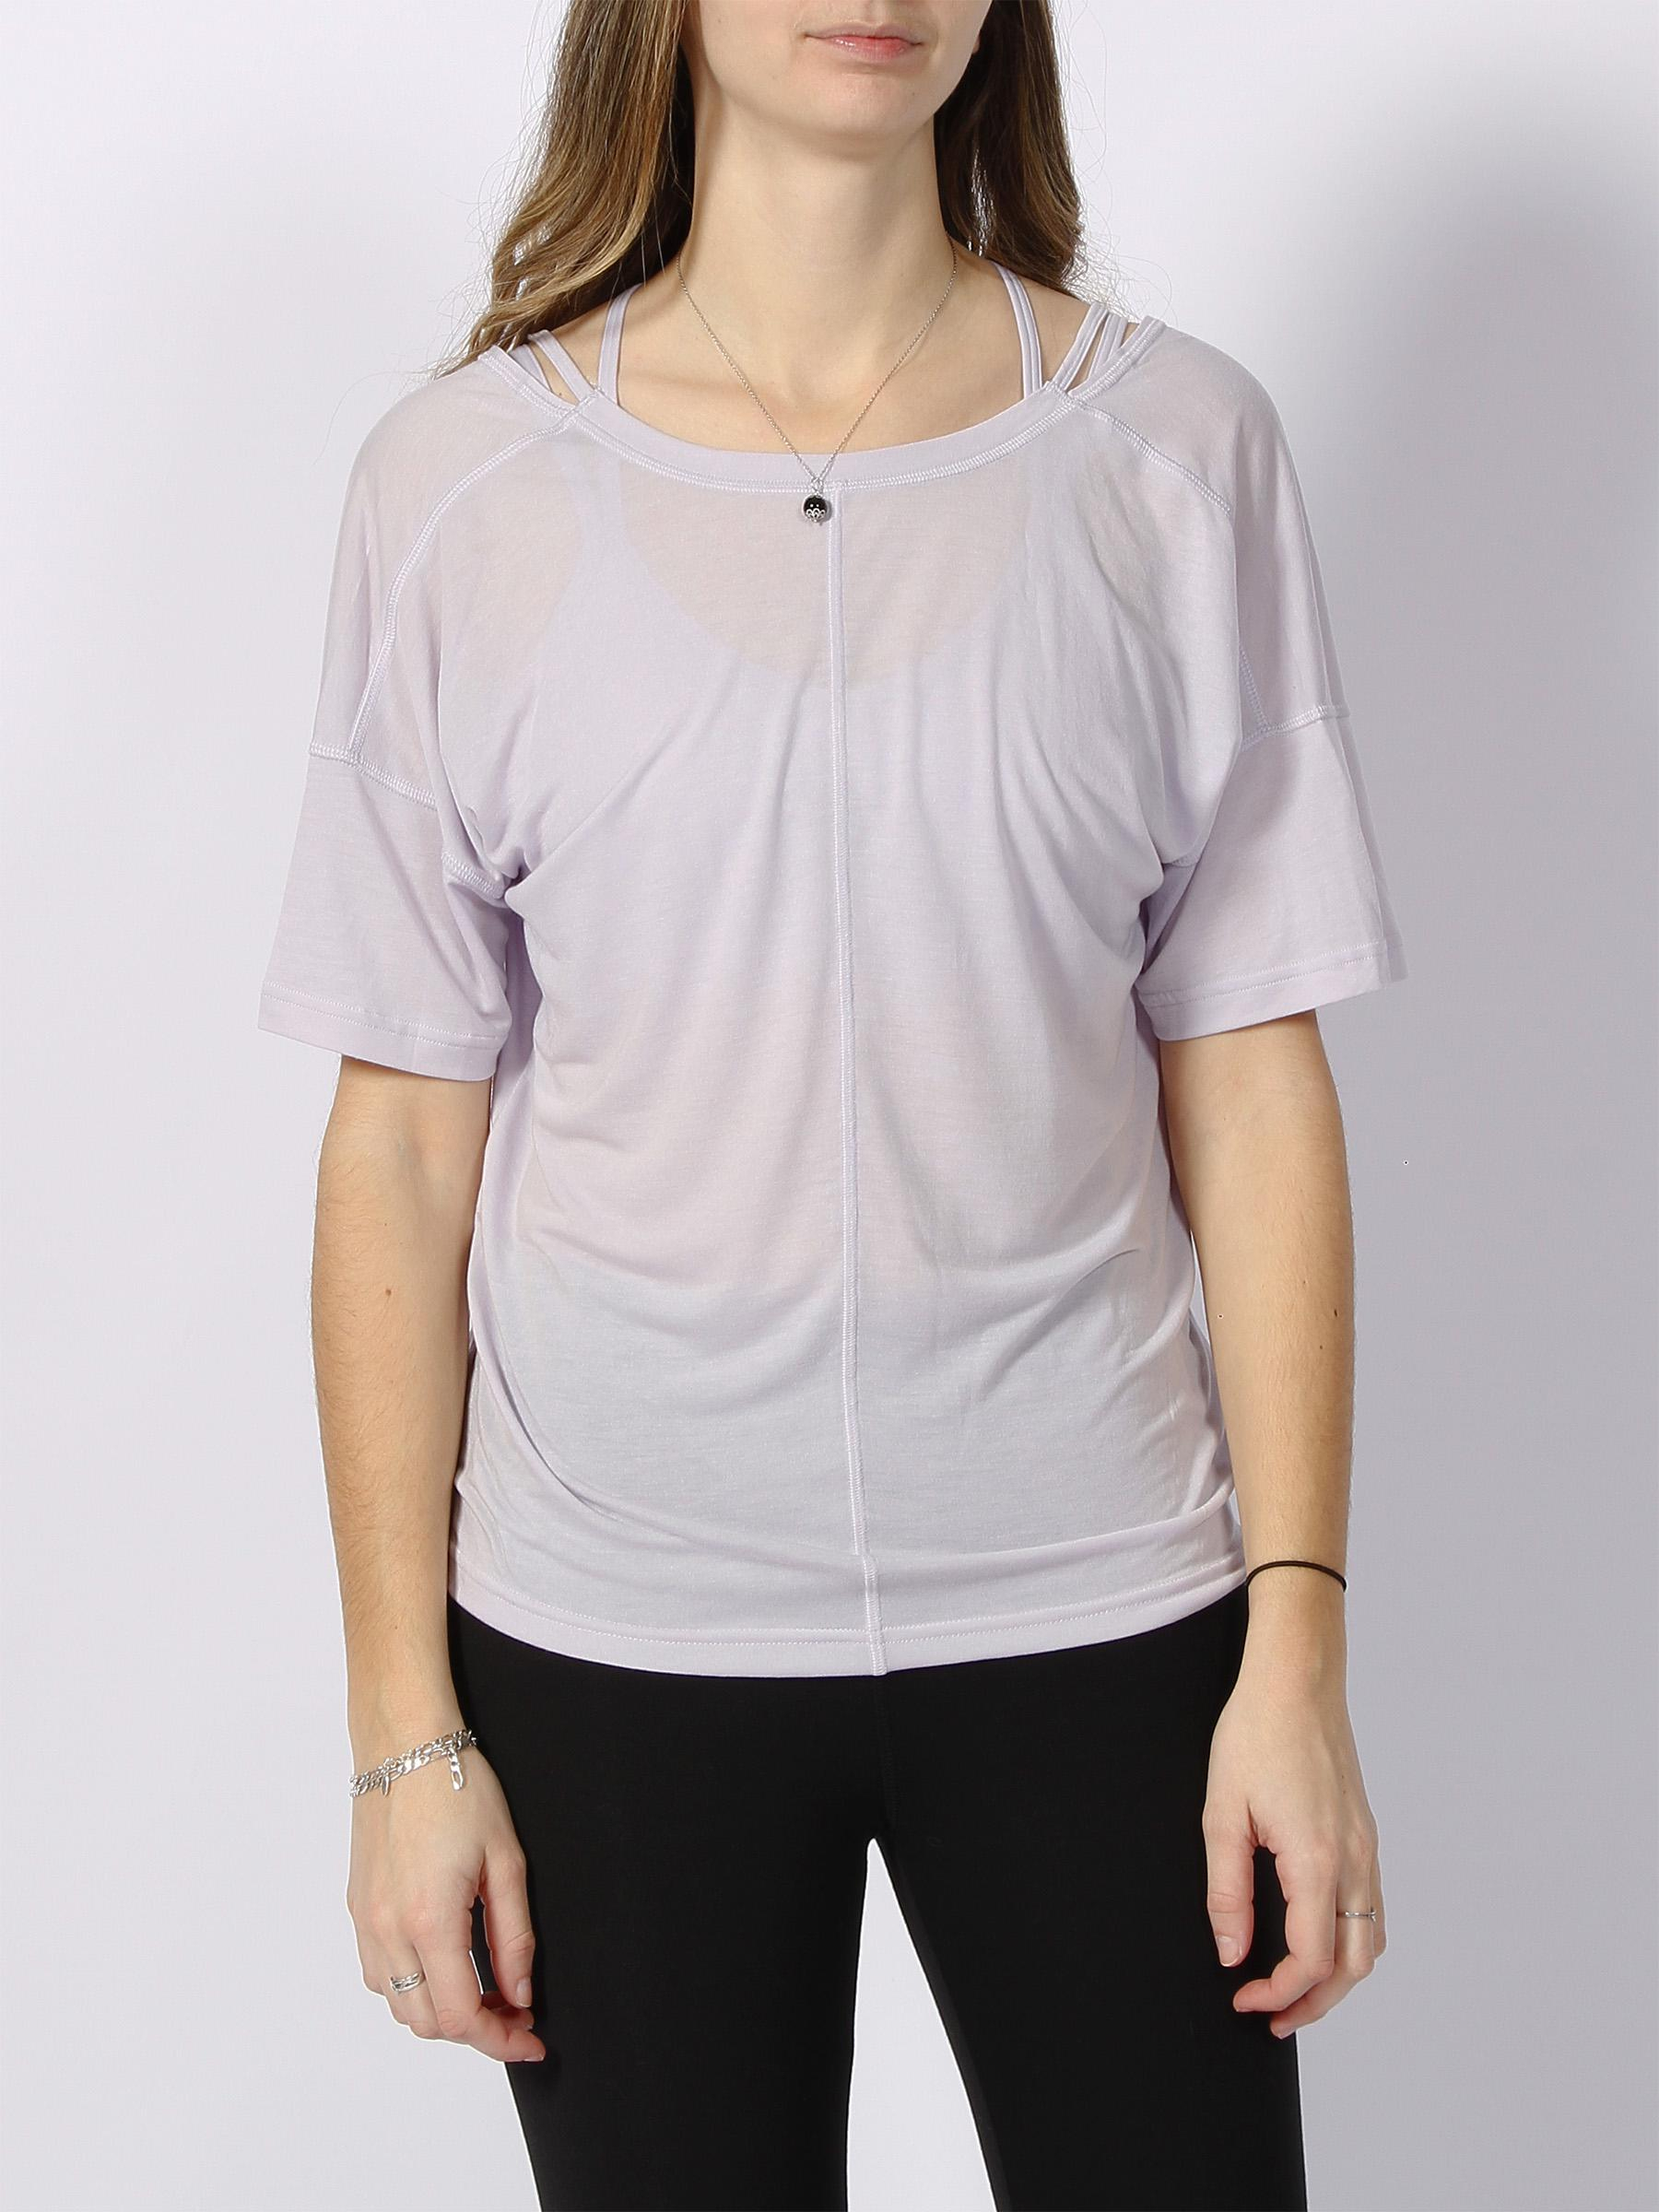 T-shirt de sport aeroready violet femme - Adidas